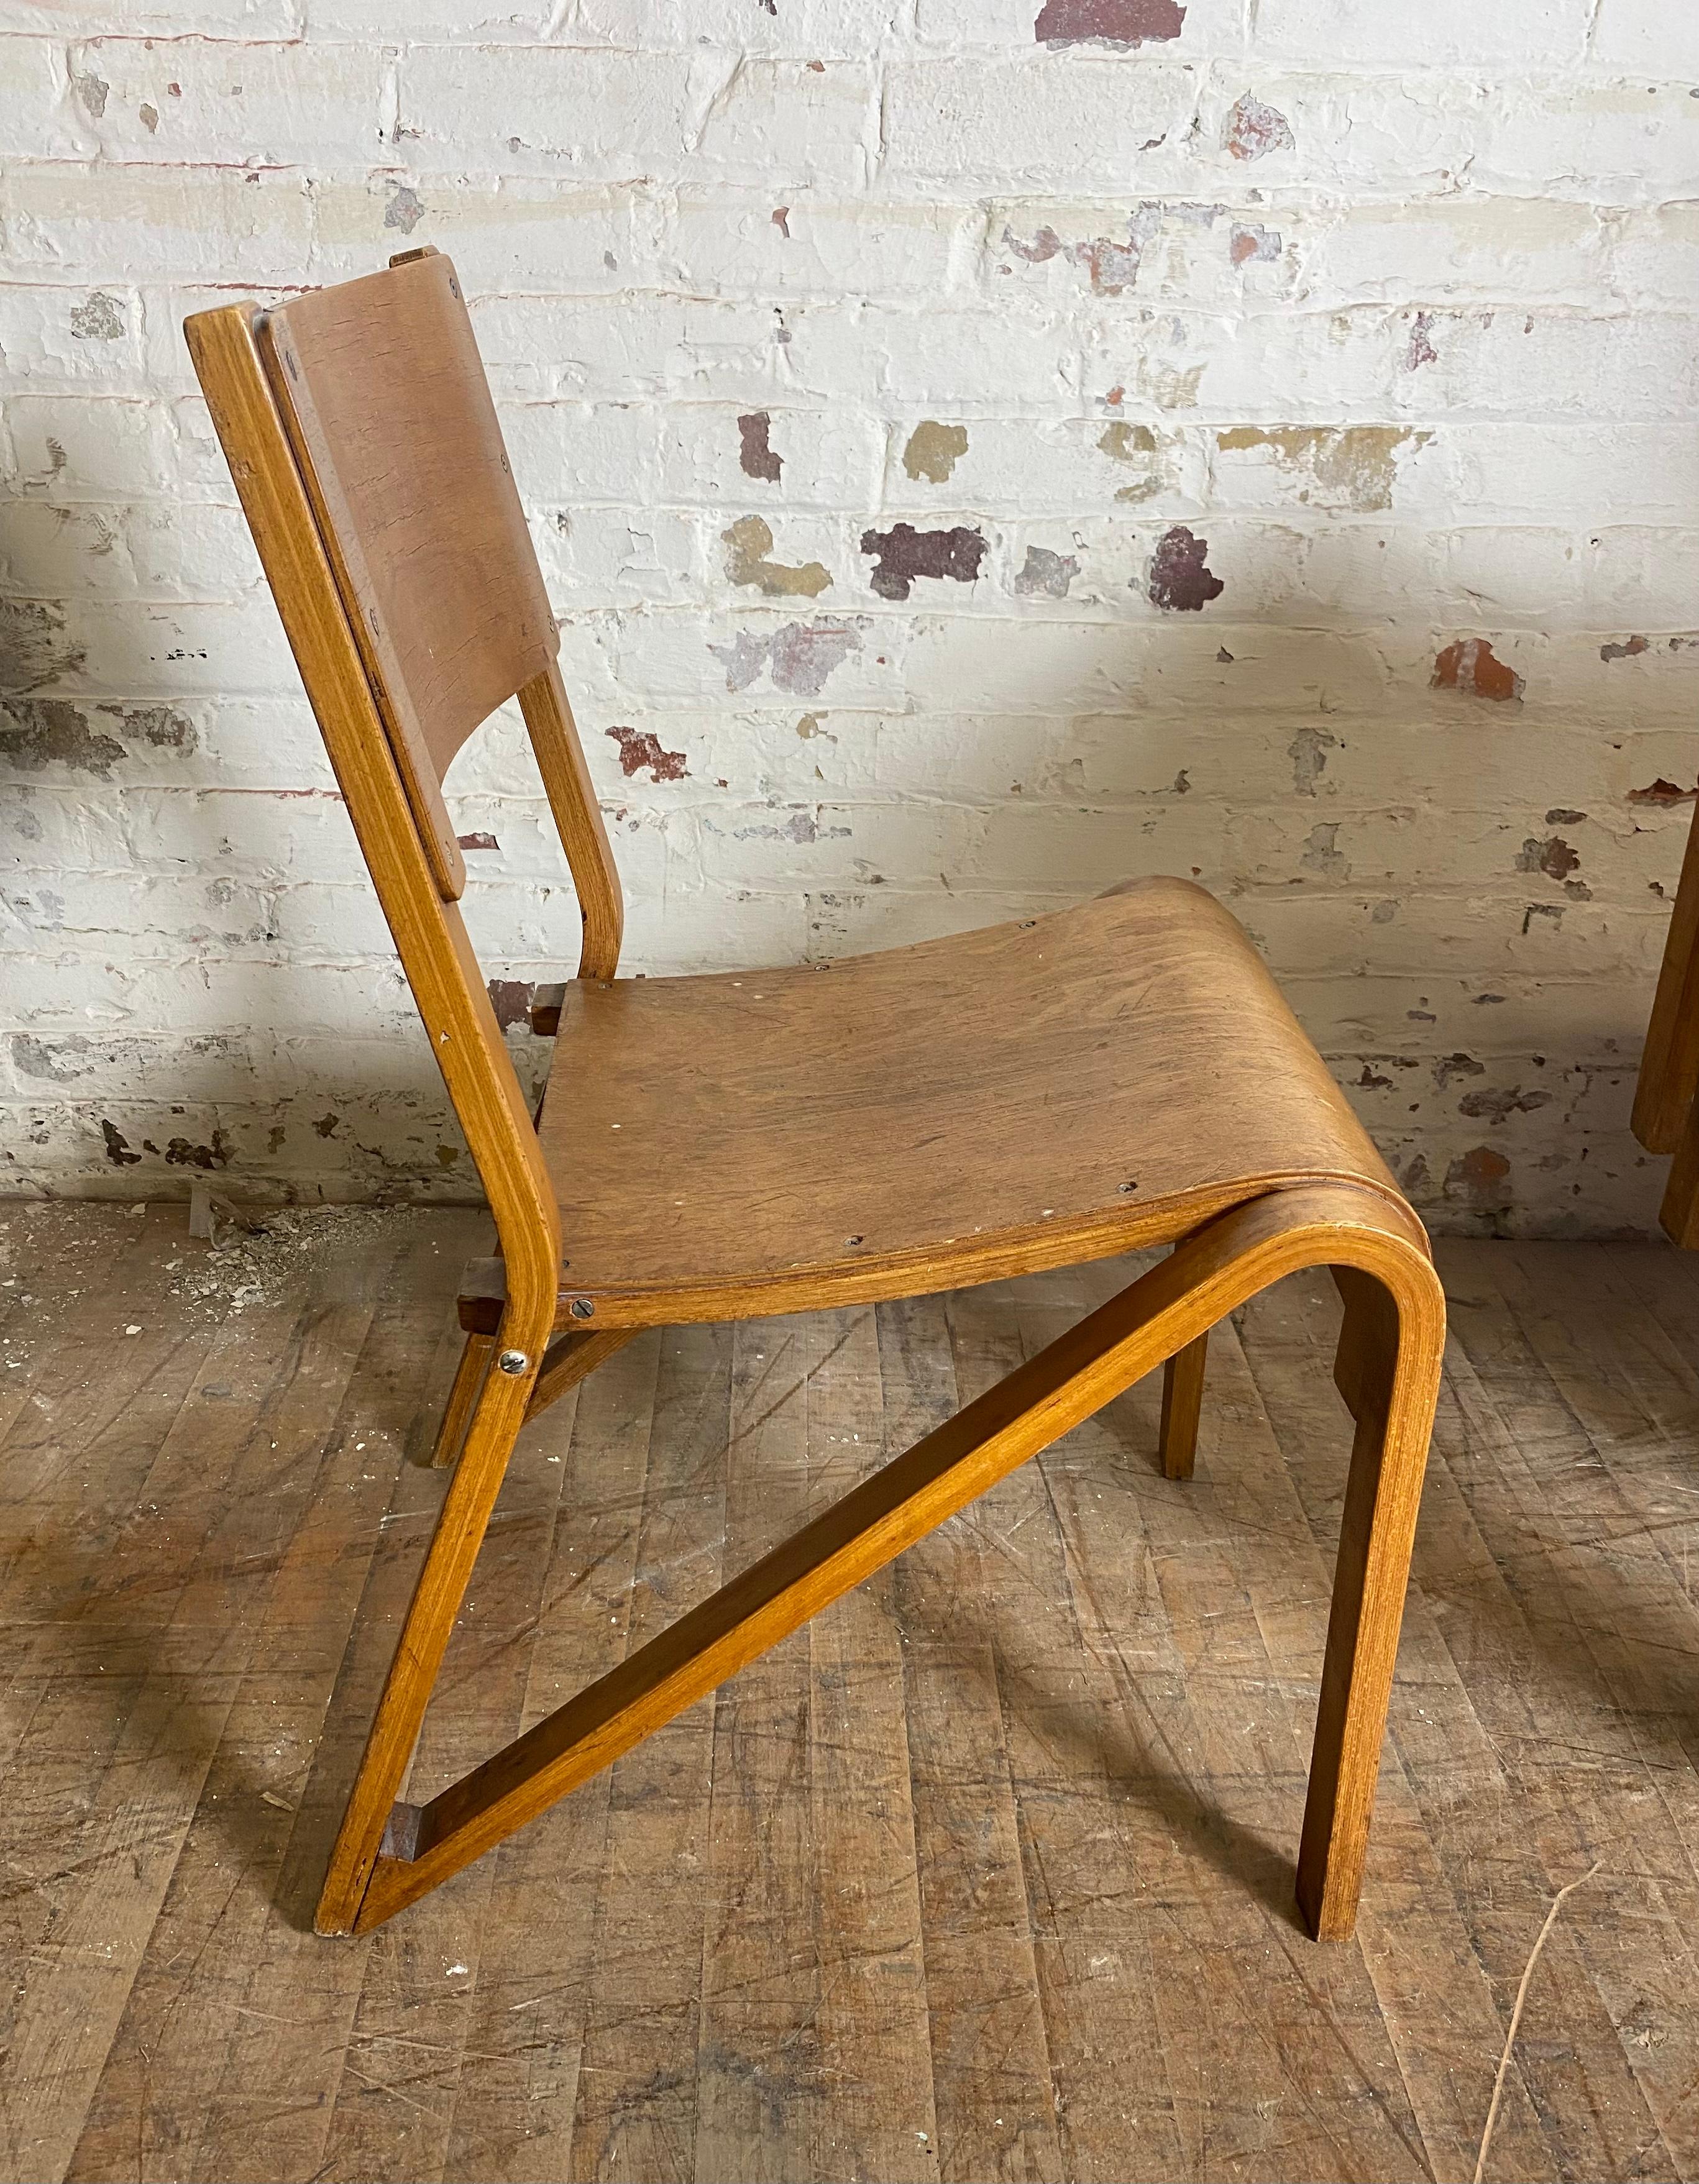 Ensemble inhabituel de 6 chaises empilables industrielles modernistes en contreplaqué courbé. Design/One. Influence du Bauhaus. Extrêmement confortable.